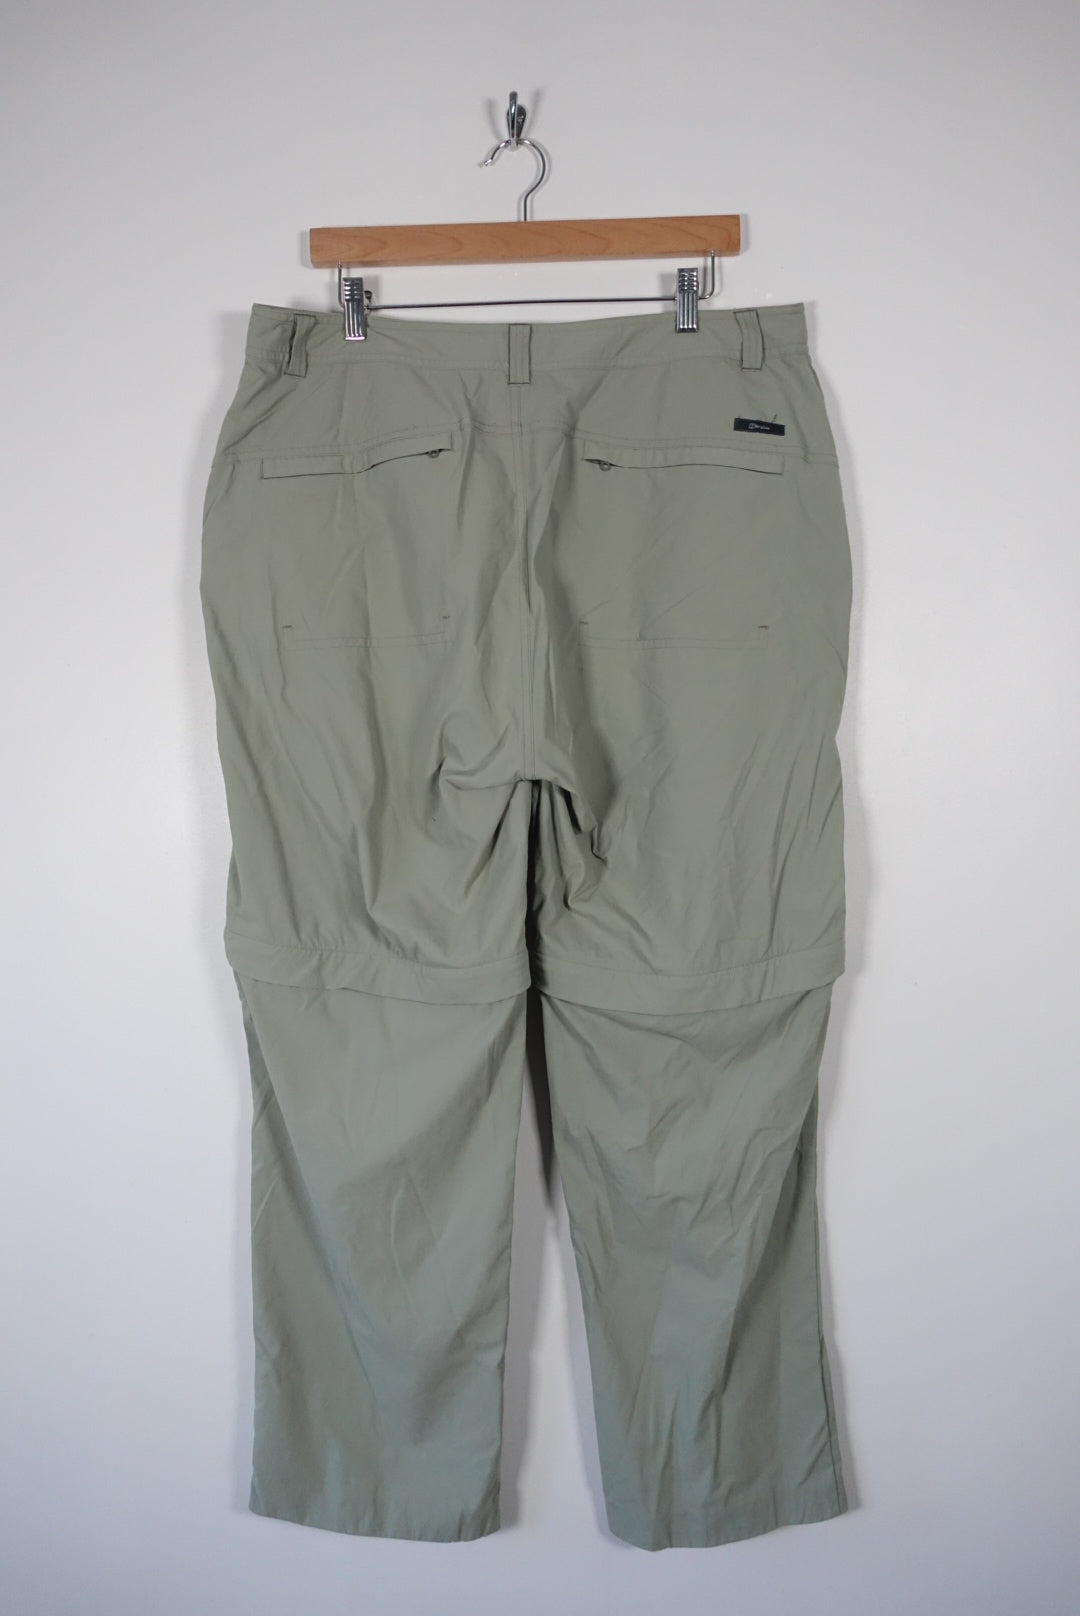 Vintage hiking pants shorts | Vintage clothes online for men